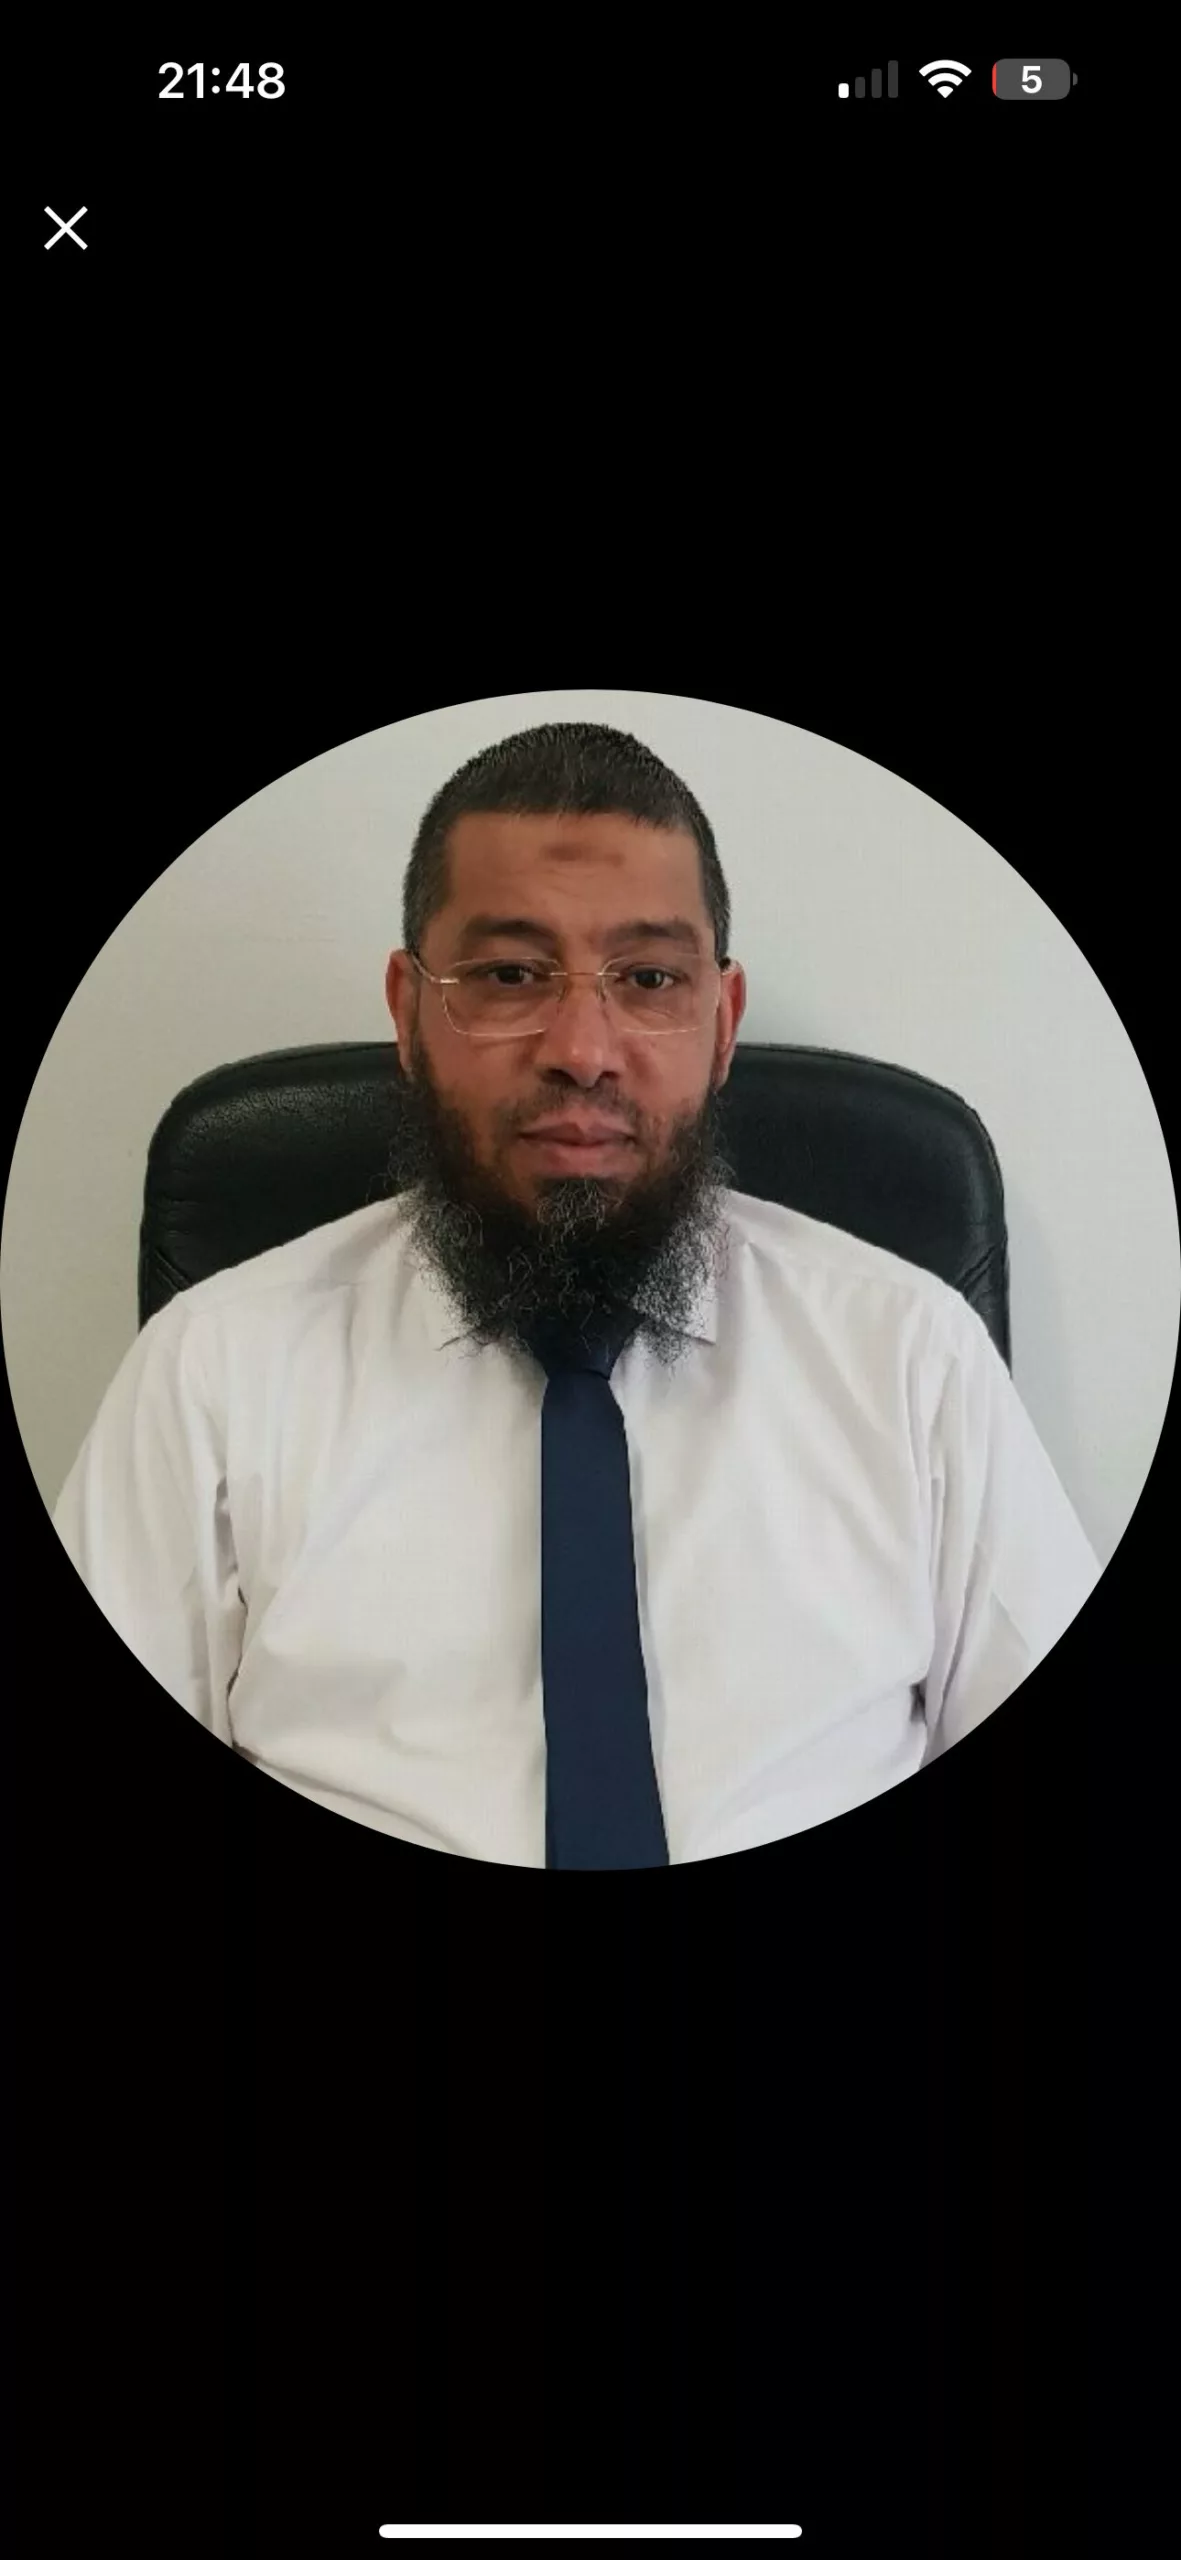 Information TV Sud: L’expulsion de l’Imam Mahjoubi validée par le Tribunal Administratif, son avocat annonce faire appel de la décision